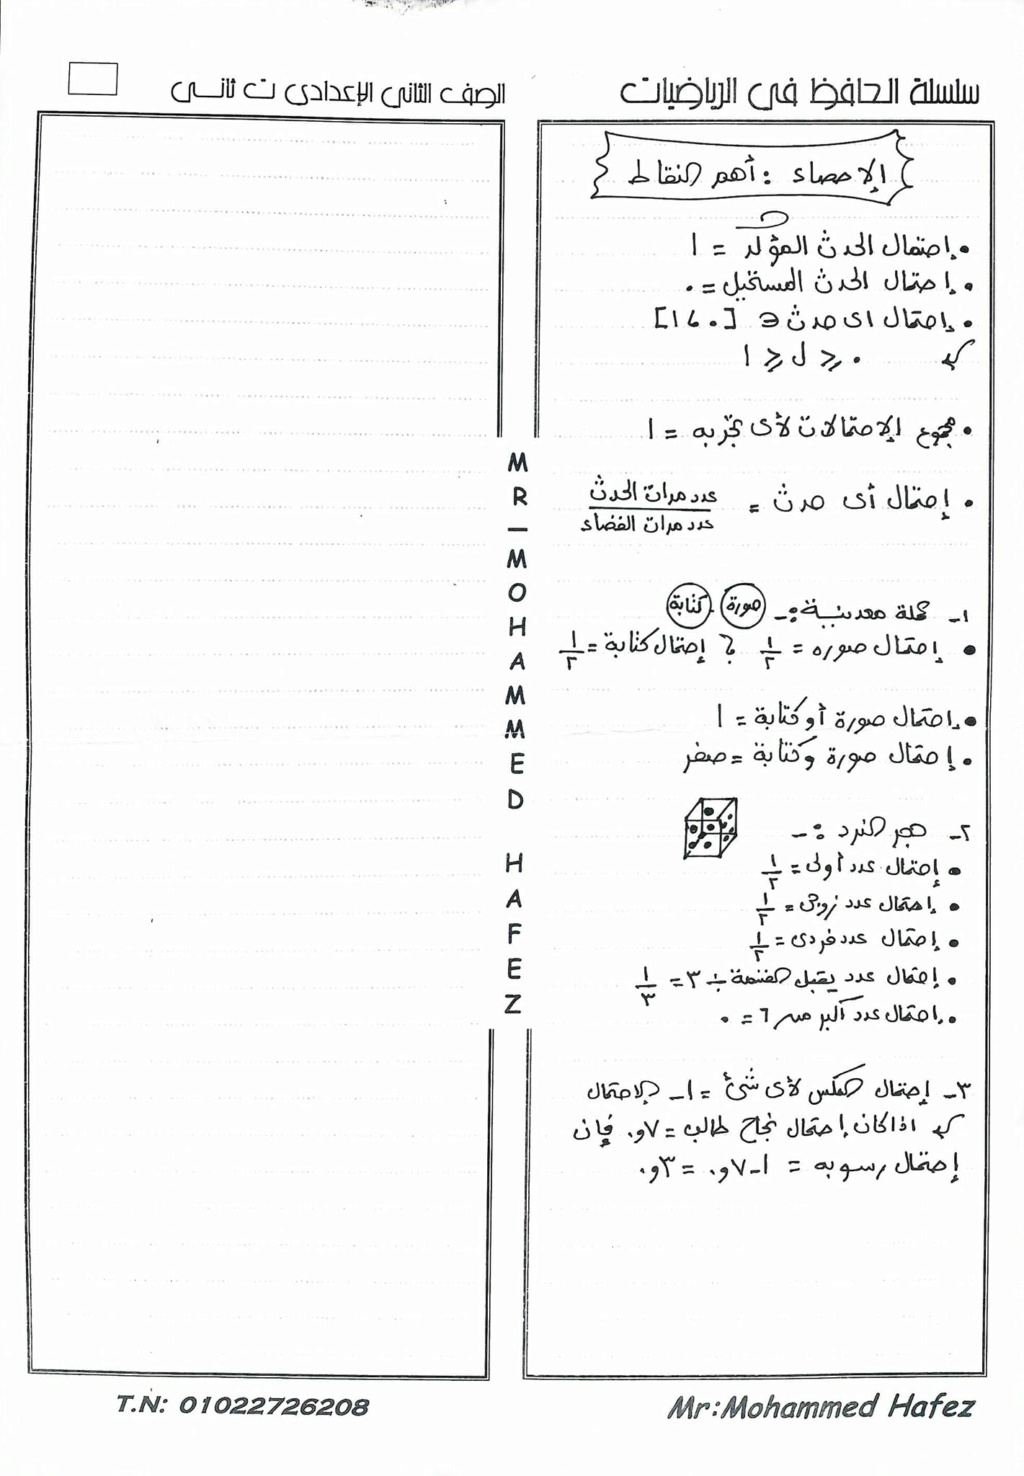 الرياضيات - ملخص شامل لأهم نقاط الرياضيات أولى اعدادي ترم ثاني أ/ محمد حافظ 870